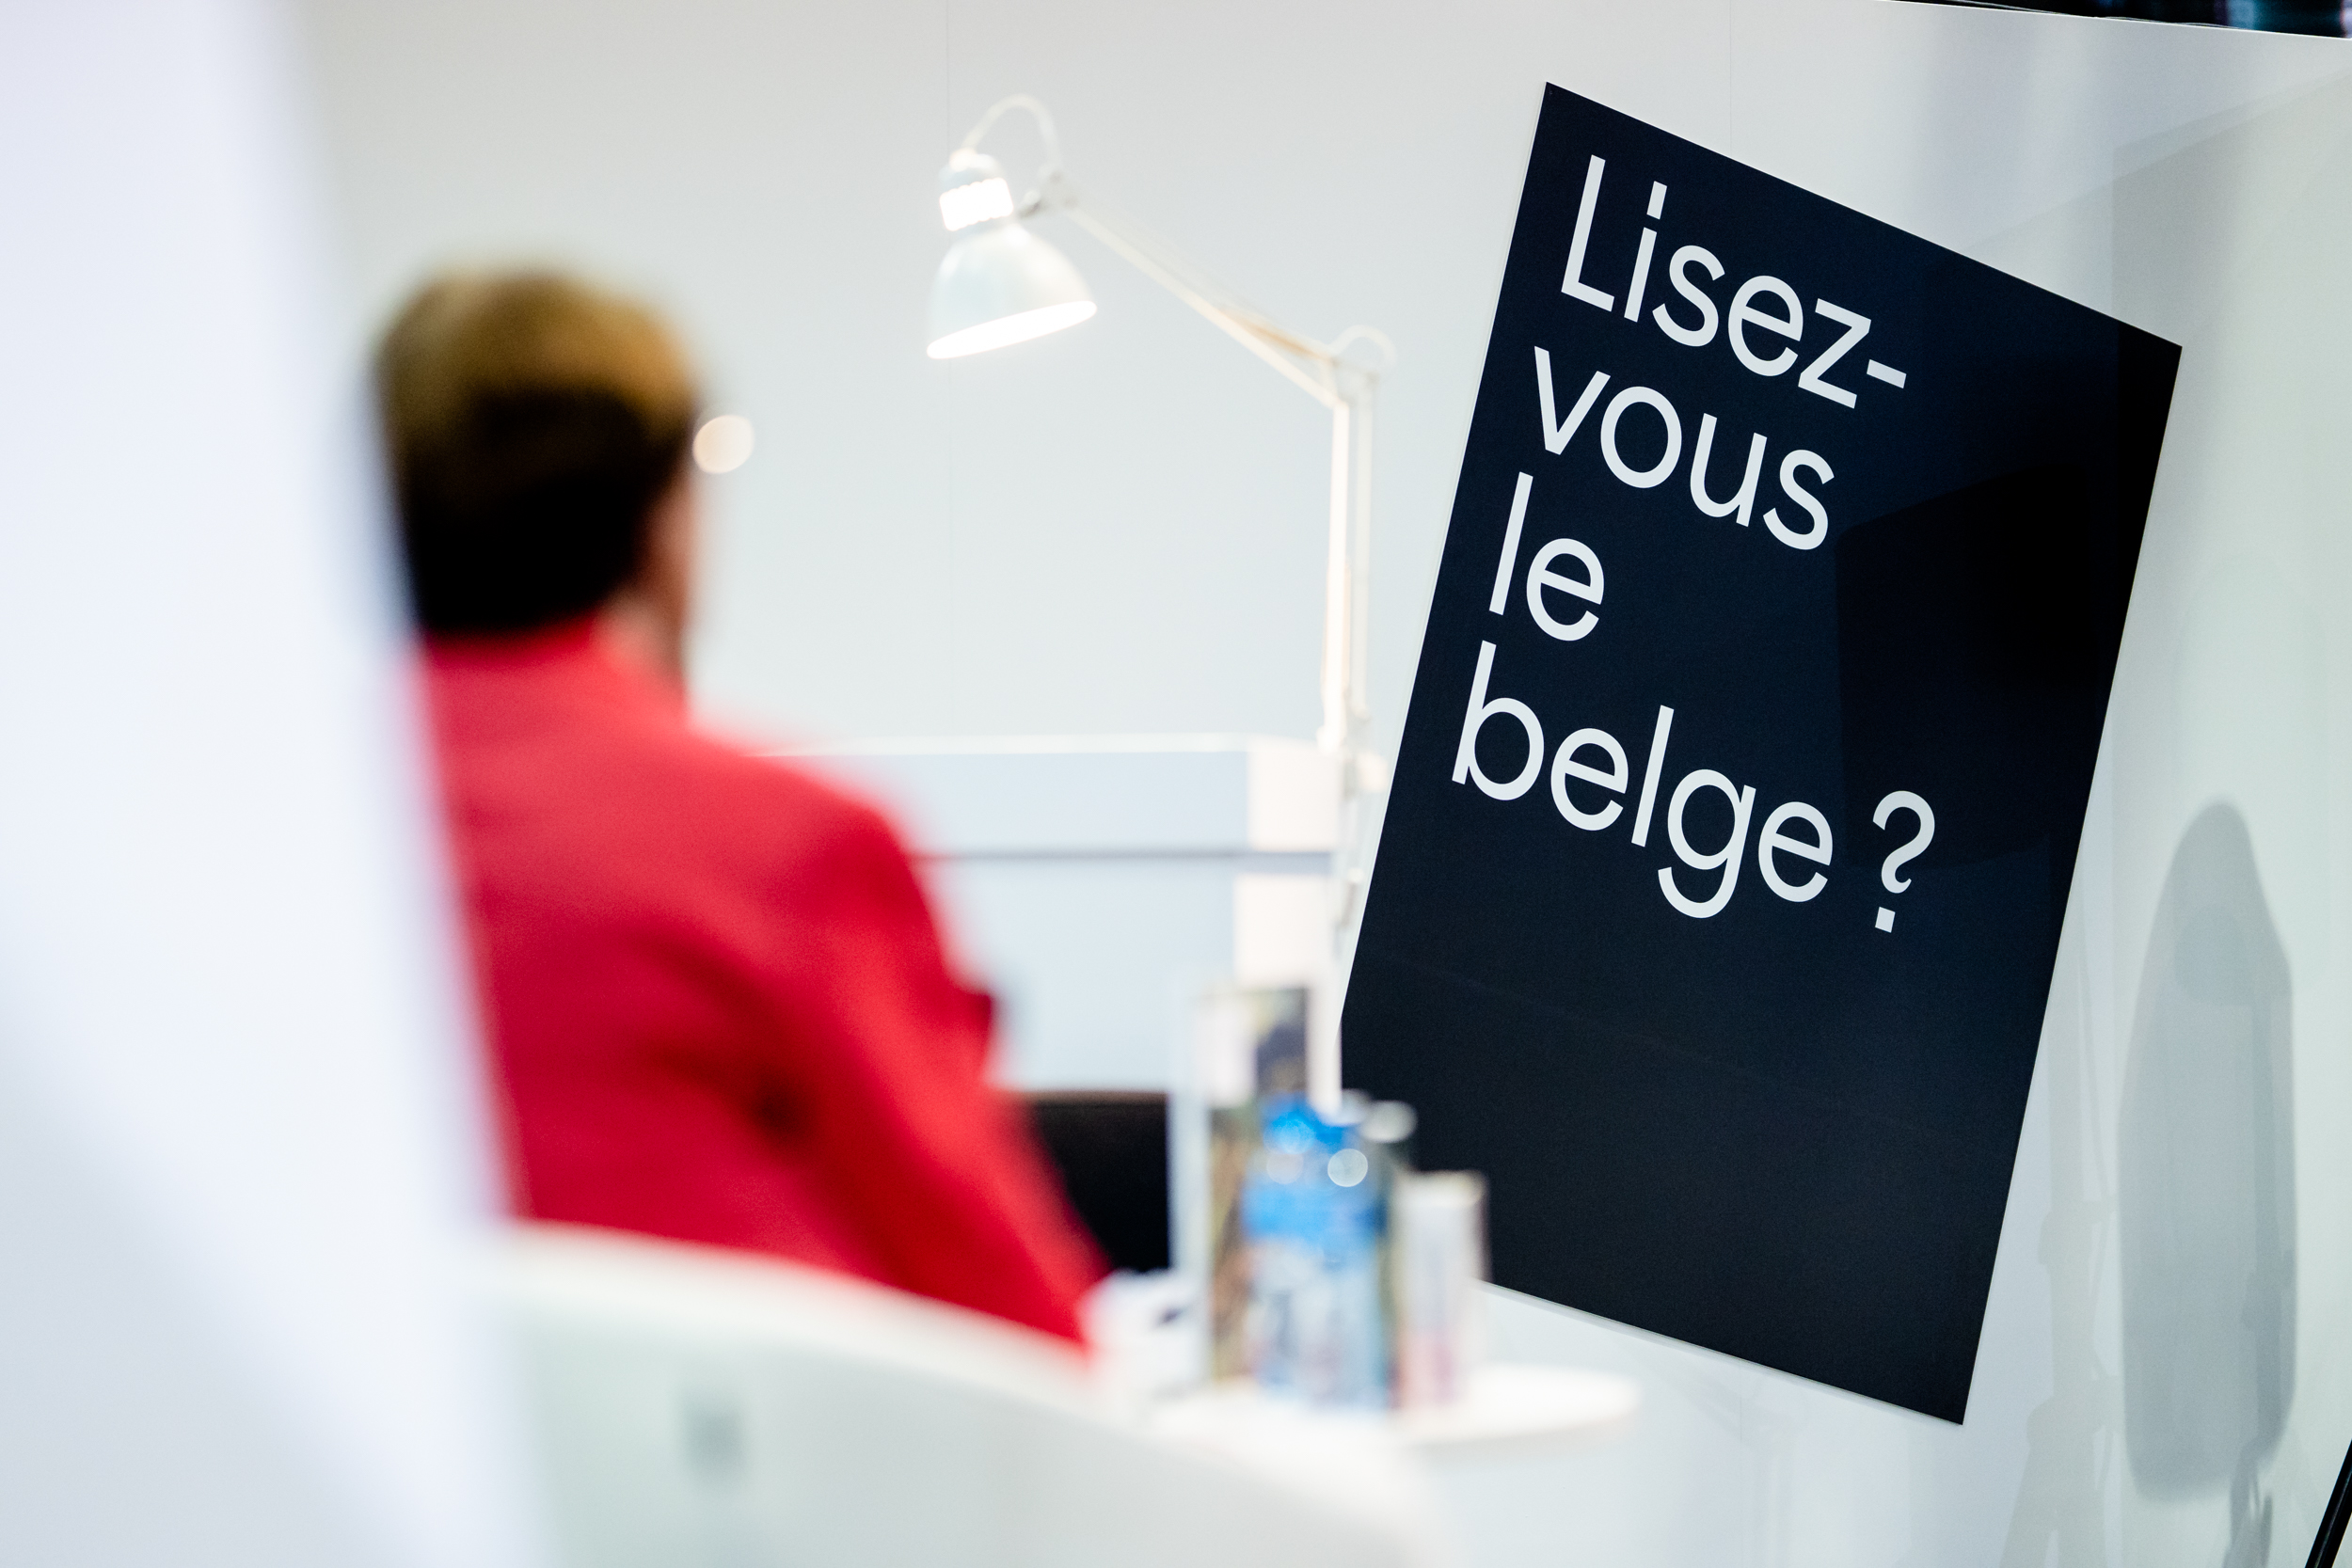 Lisez-vous le belge ?